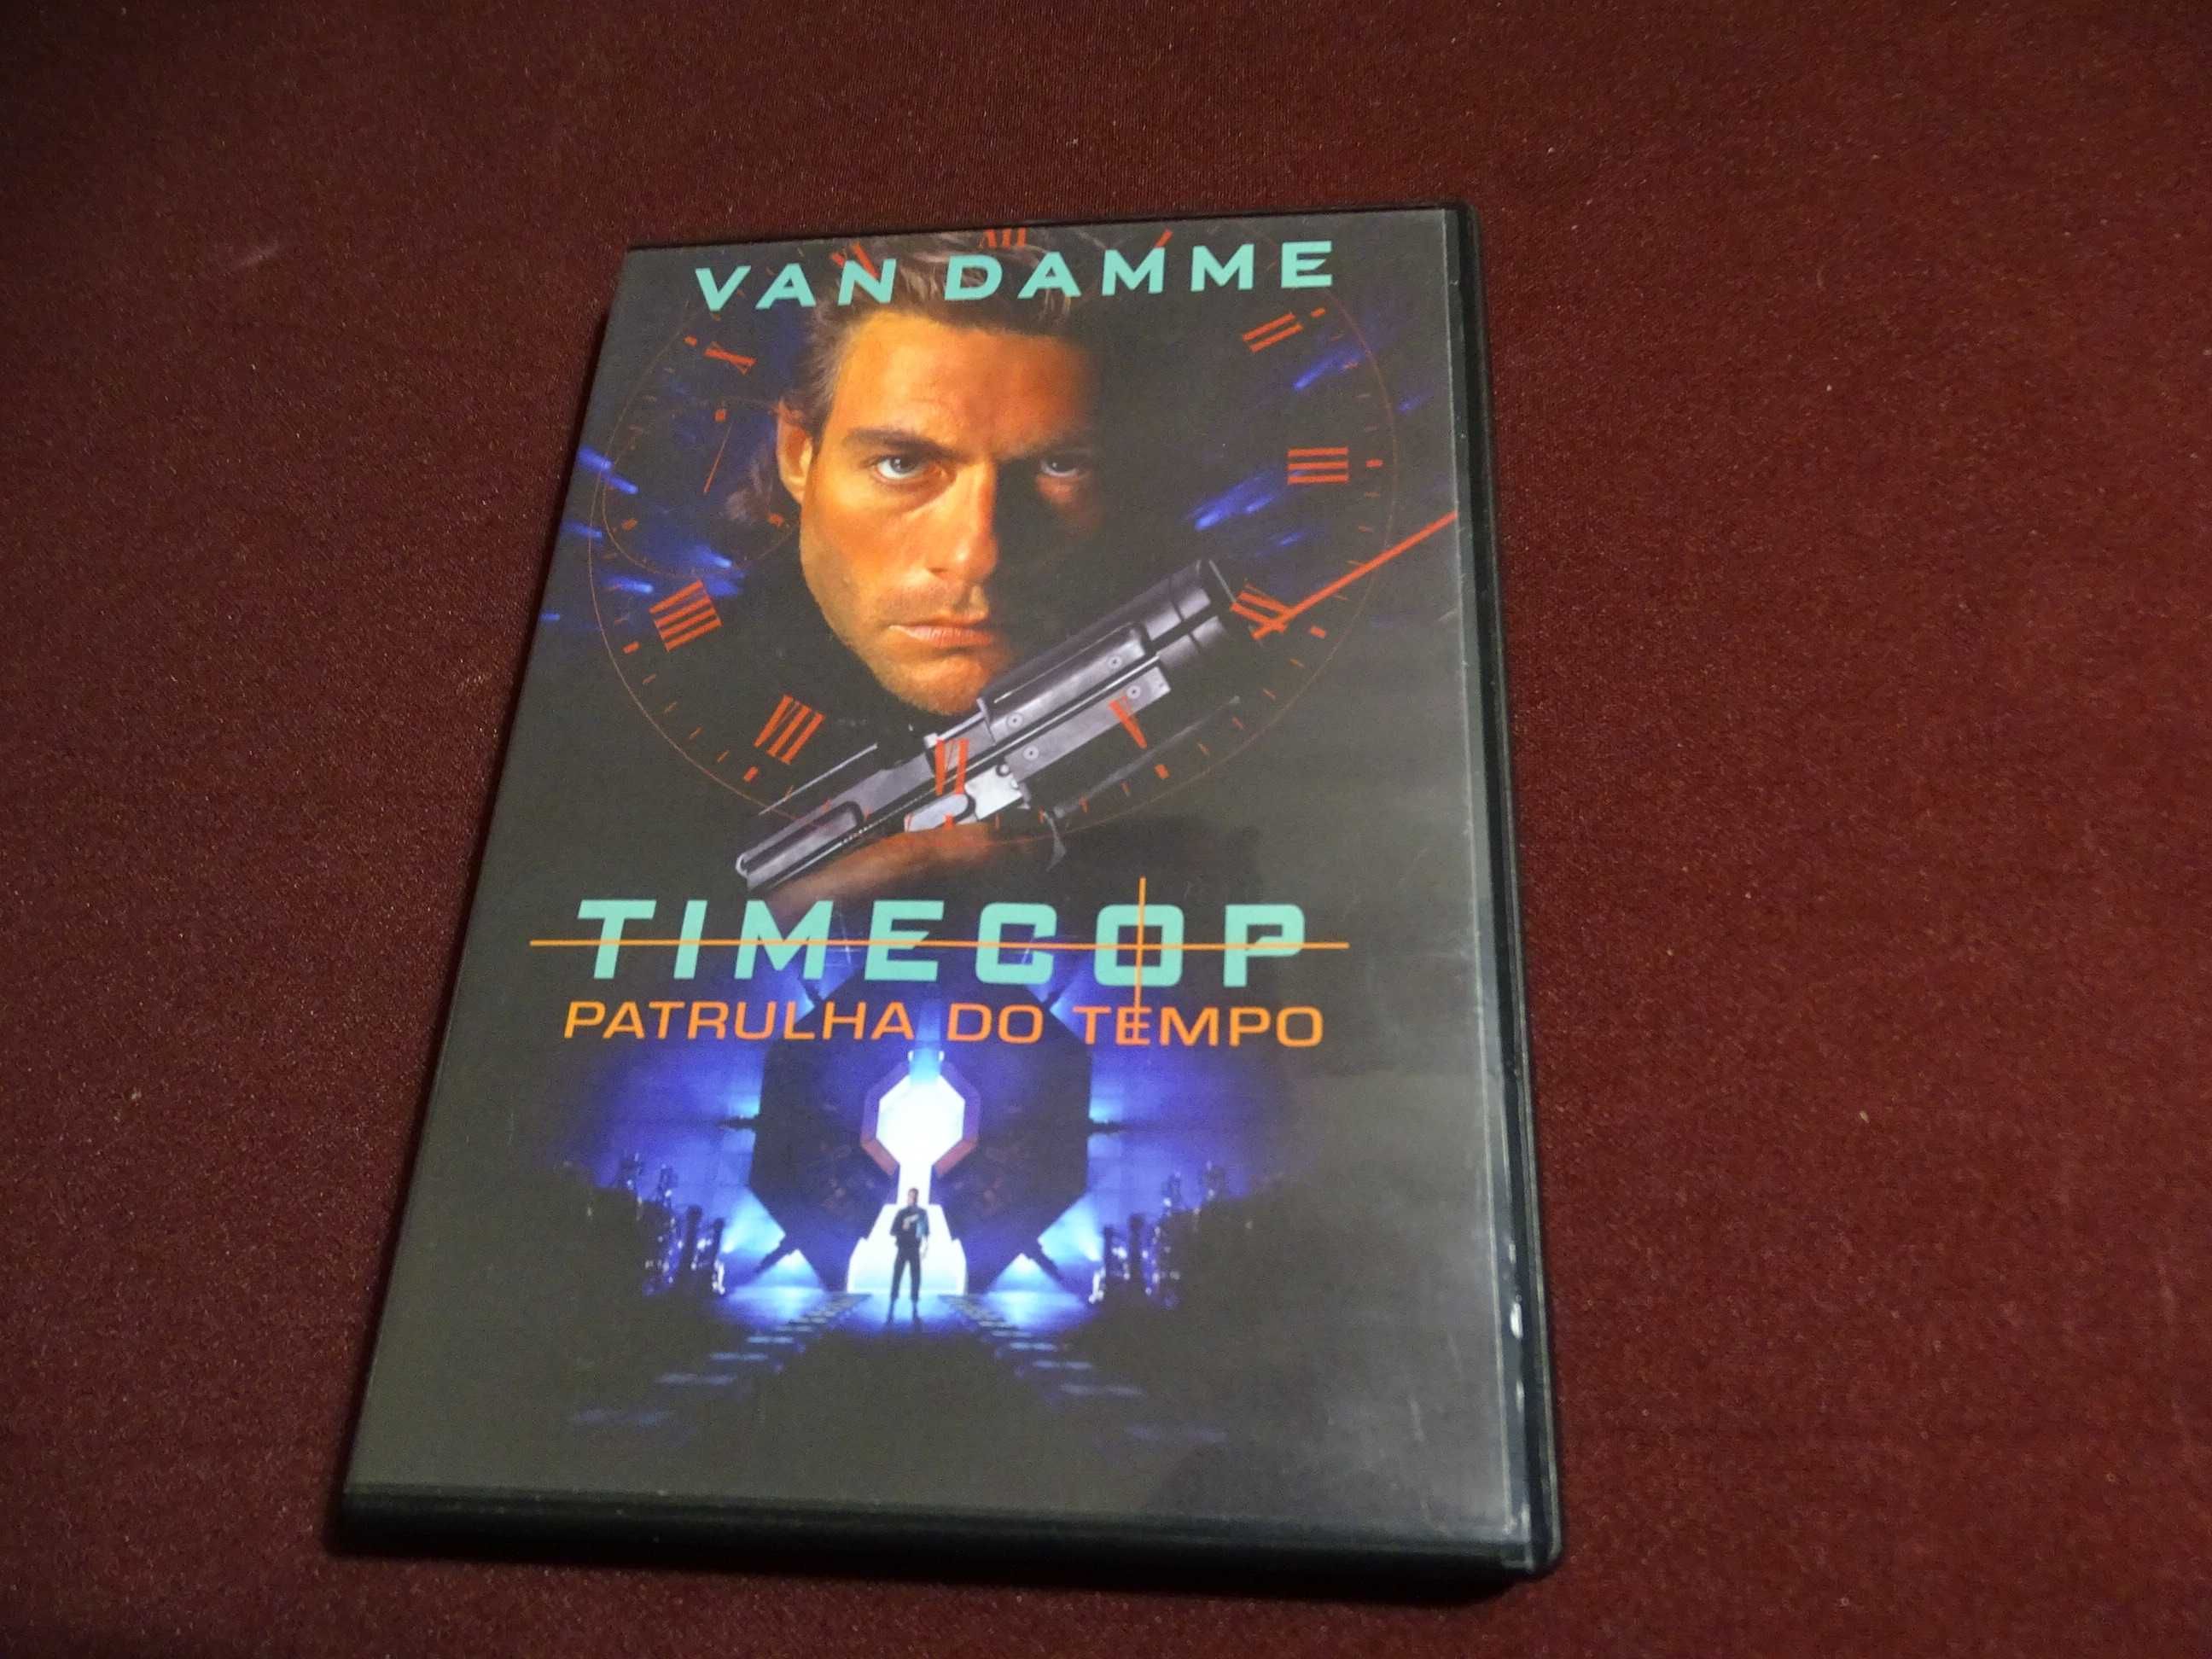 DVD-Timecop/Patrulha do tempo-Van Damme